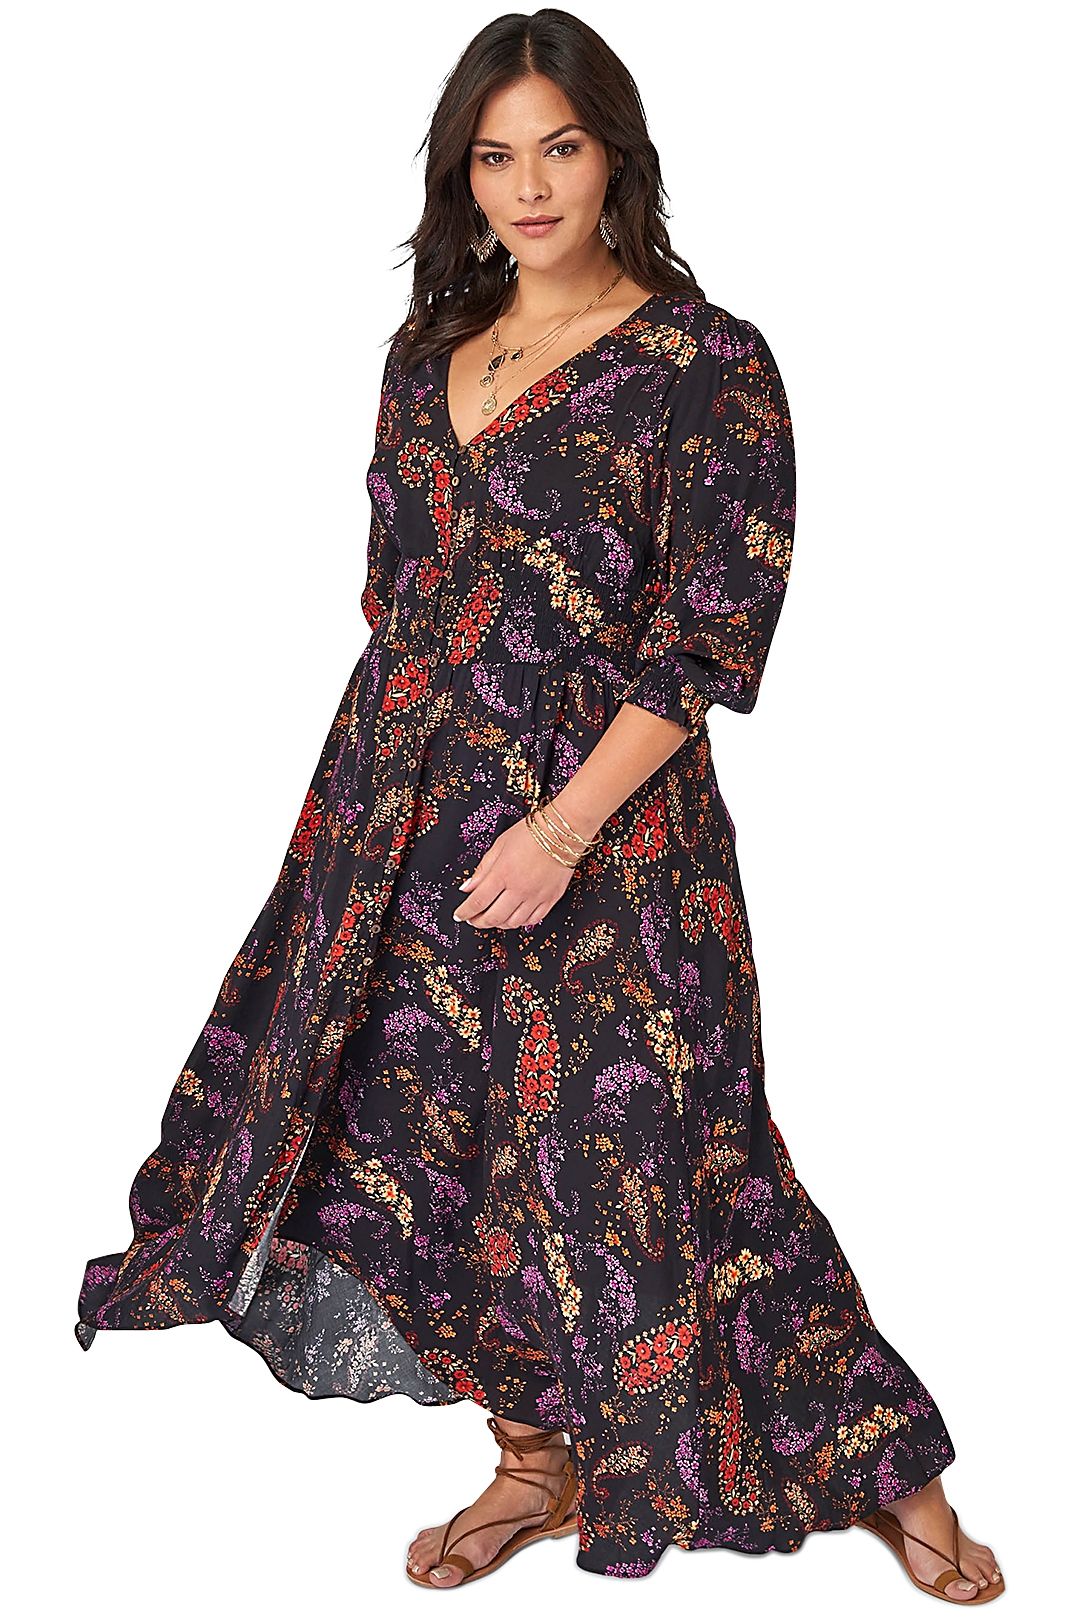 The Poetic Gypsy Gypsy Child Maxi Dress Print Multi